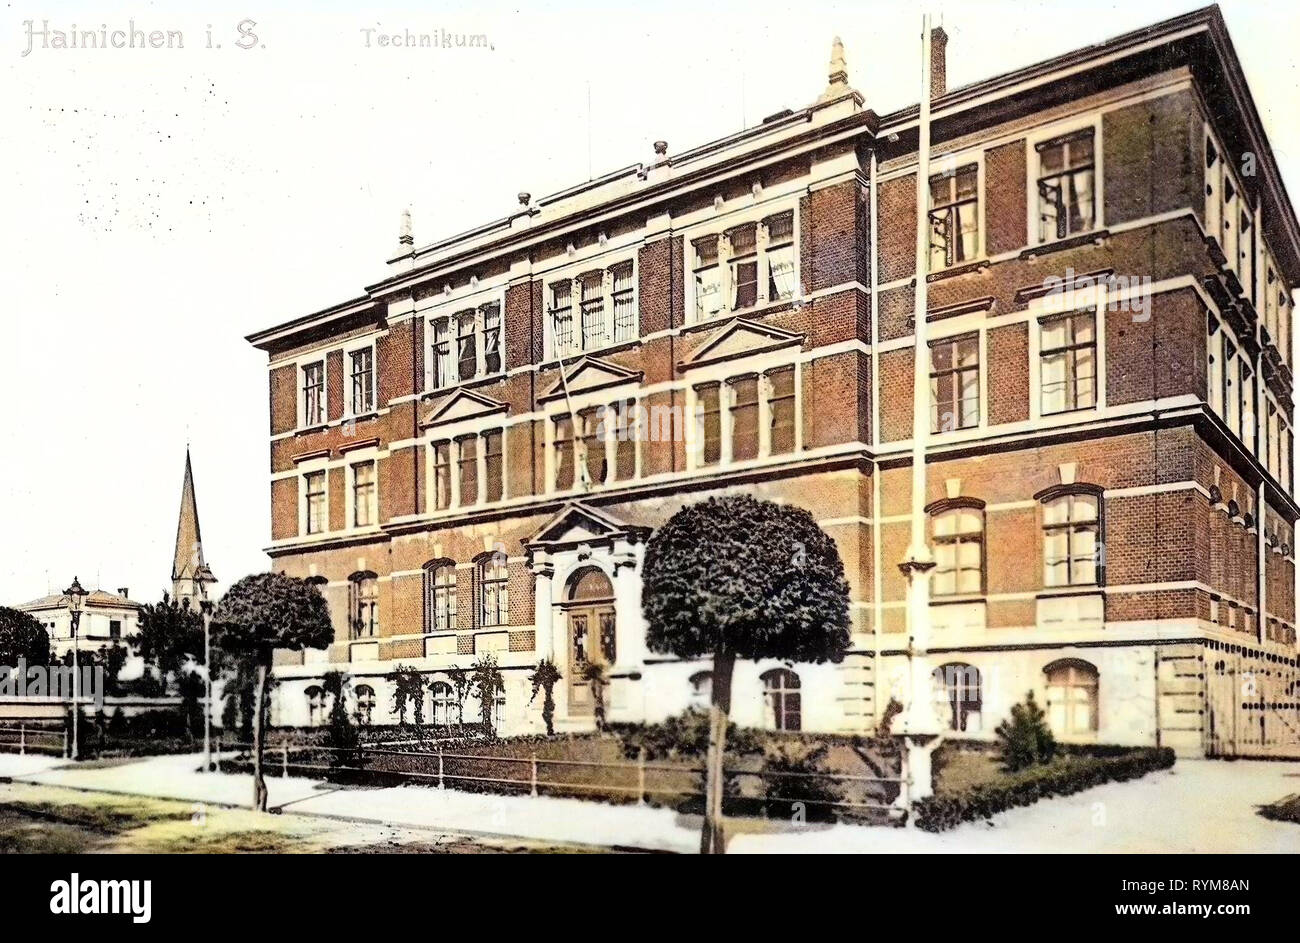 Schulen im Landkreis Mittelsachsen, Hainichen, 1903, Landkreis Mittelsachsen, Technikum, Deutschland Stockfoto